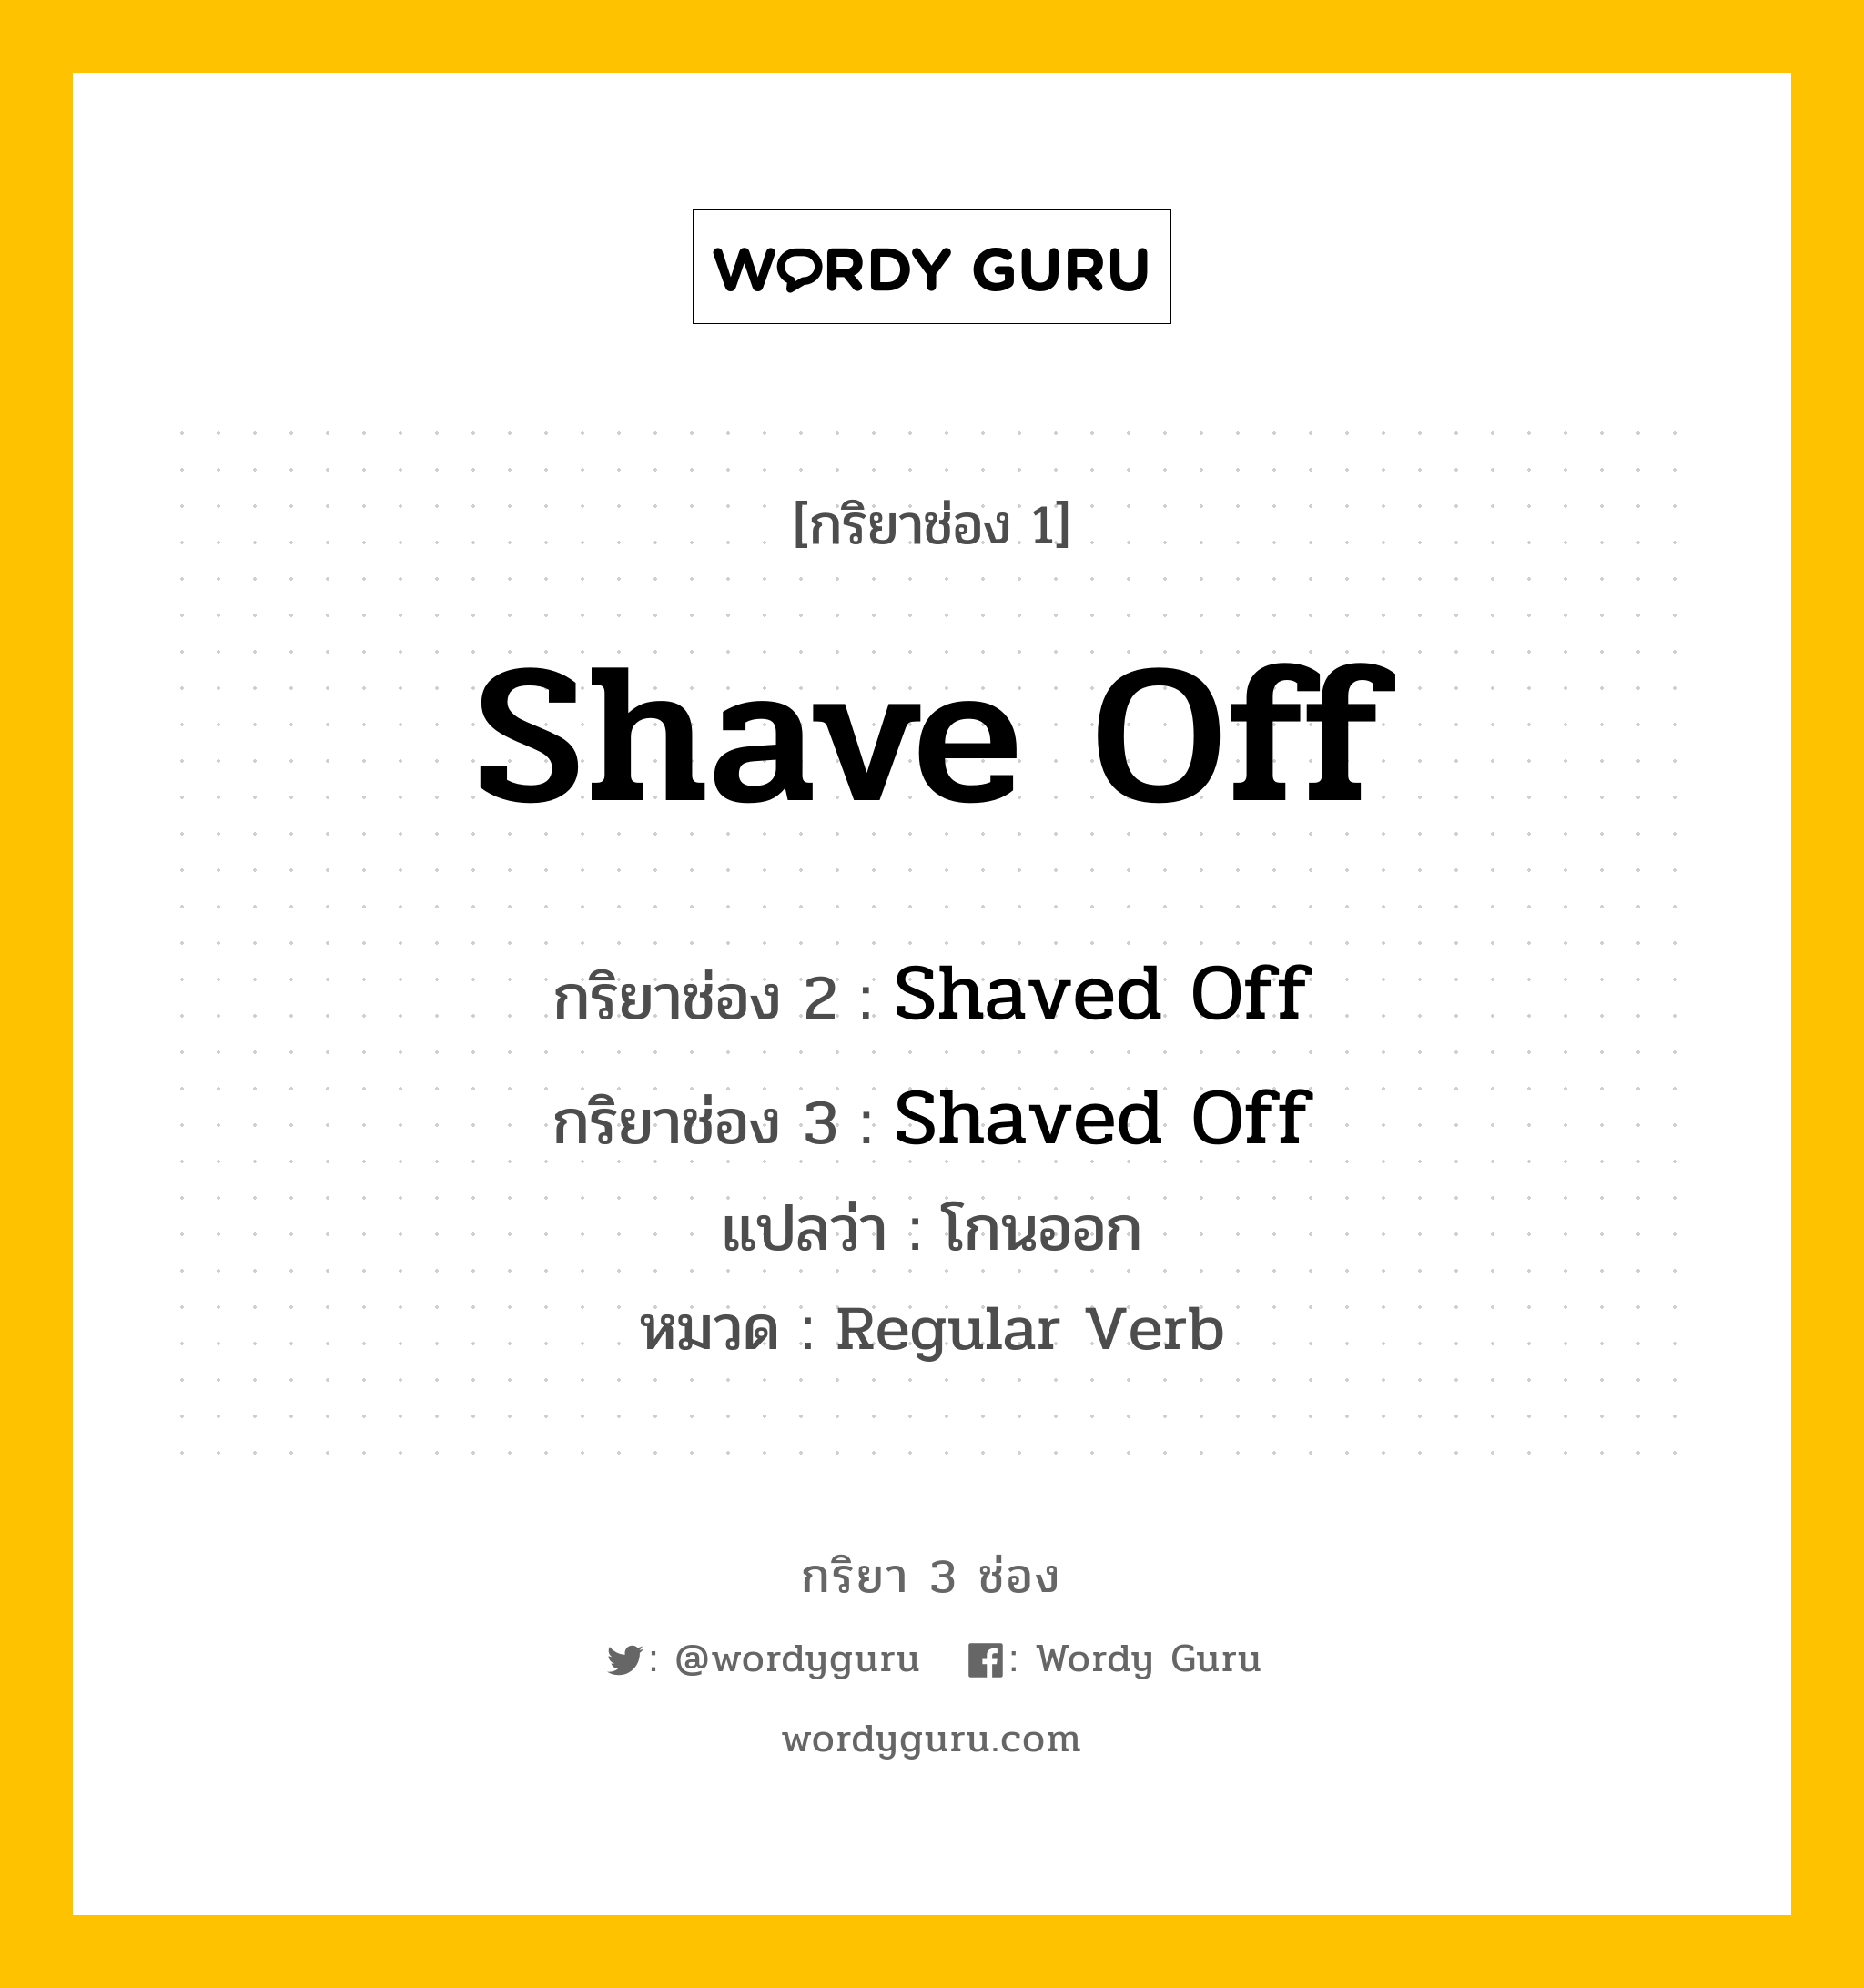 กริยา 3 ช่อง: Shave Off ช่อง 2 Shave Off ช่อง 3 คืออะไร, กริยาช่อง 1 Shave Off กริยาช่อง 2 Shaved Off กริยาช่อง 3 Shaved Off แปลว่า โกนออก หมวด Regular Verb หมวด Regular Verb